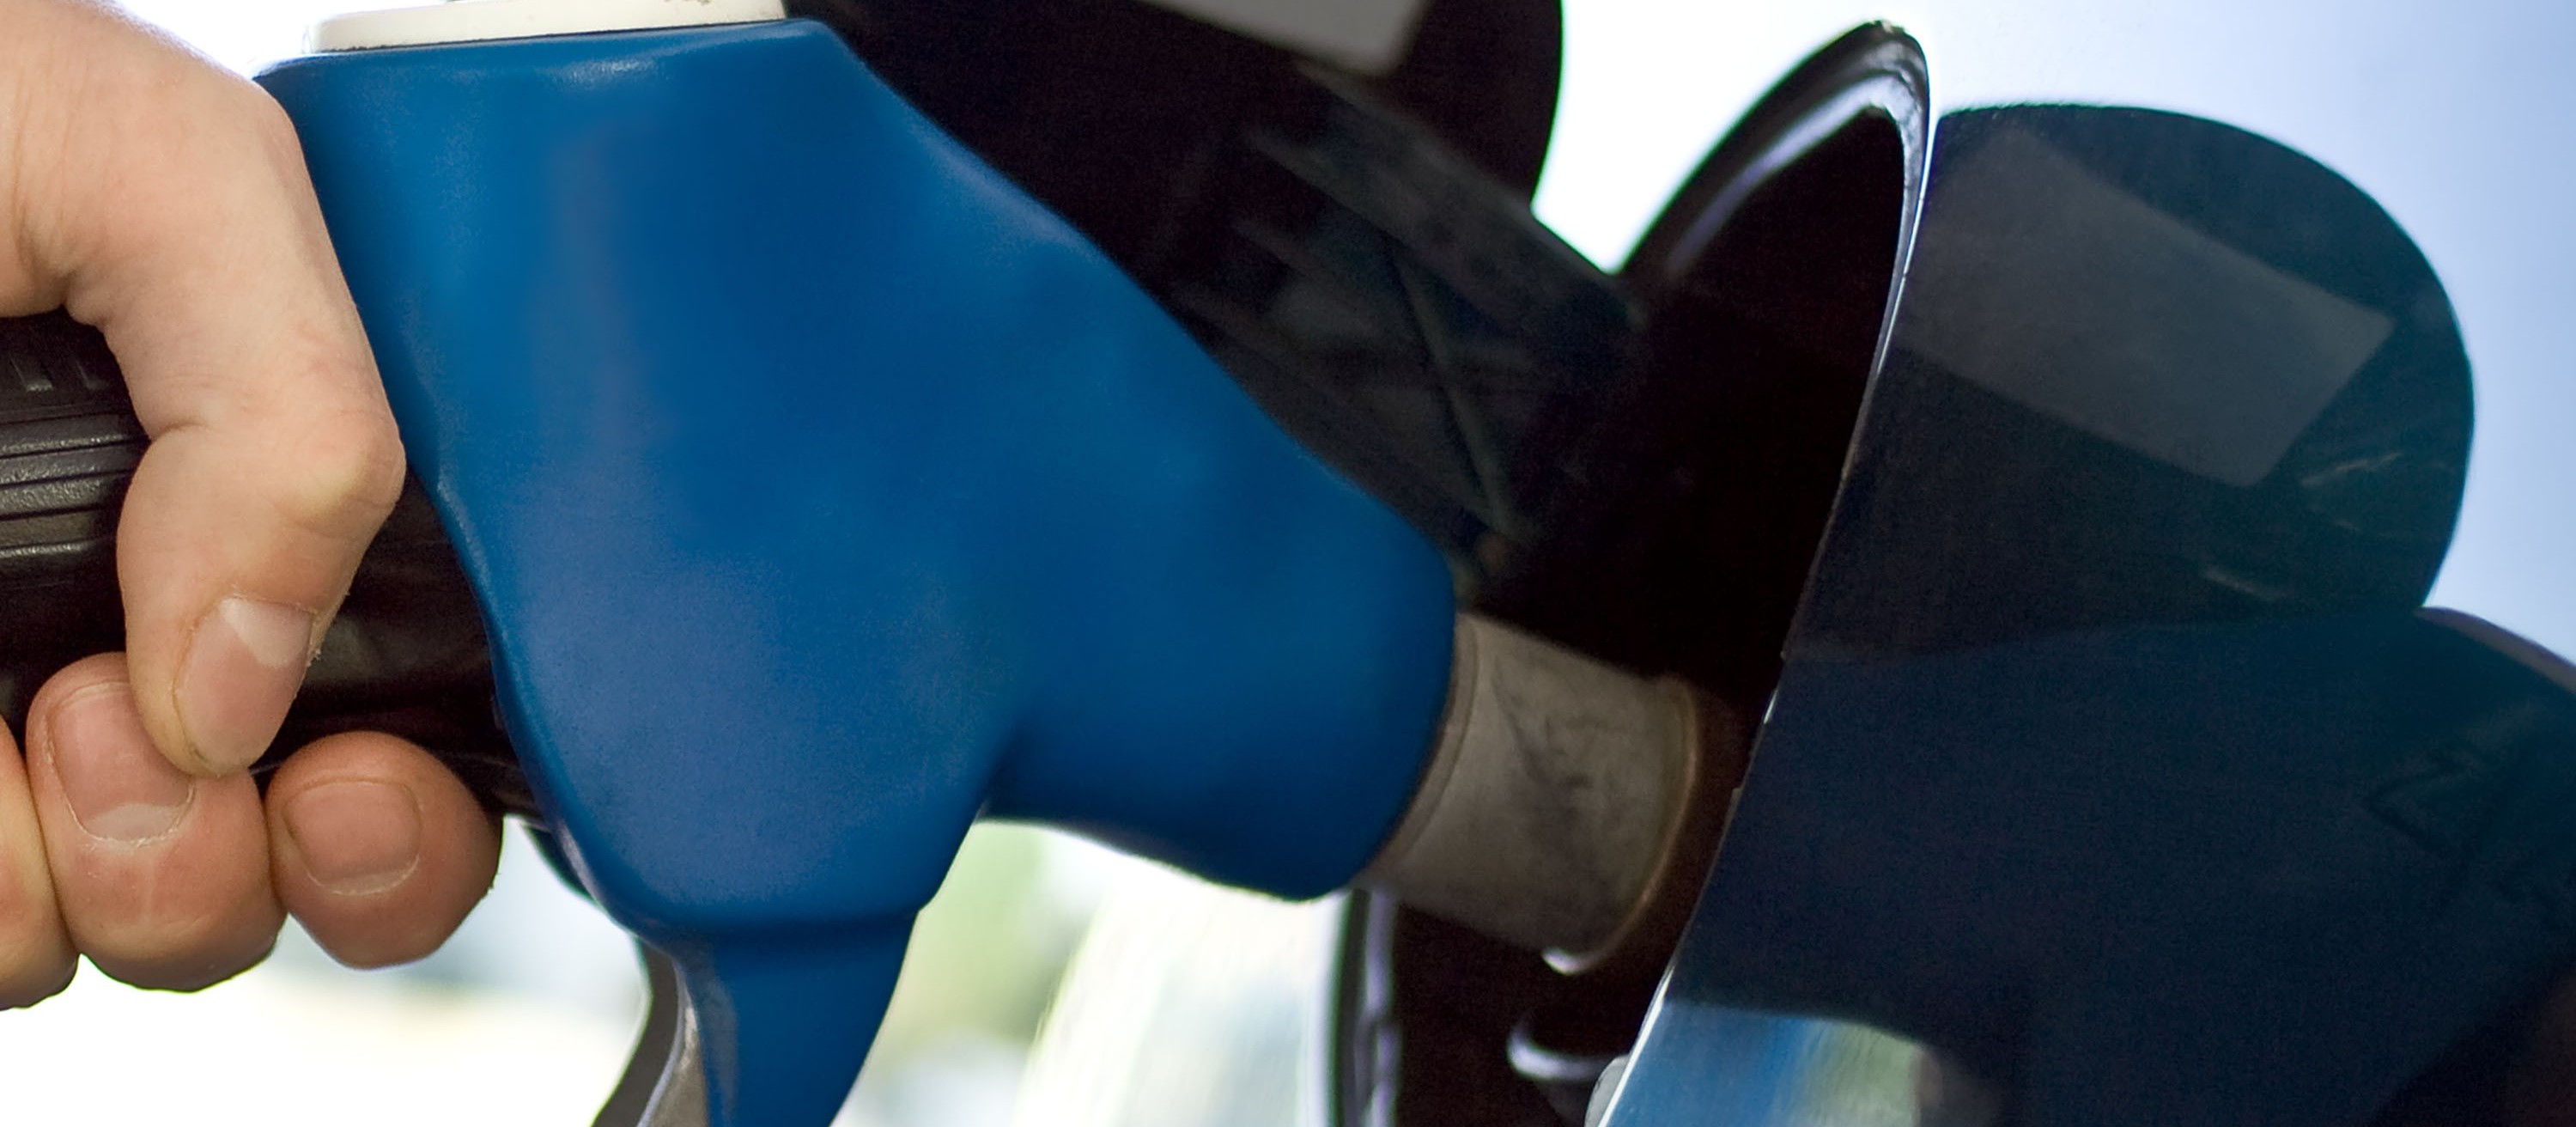 Preço de combustíveis tem forte pressão sobre a inflação e exige atenção do consumidor